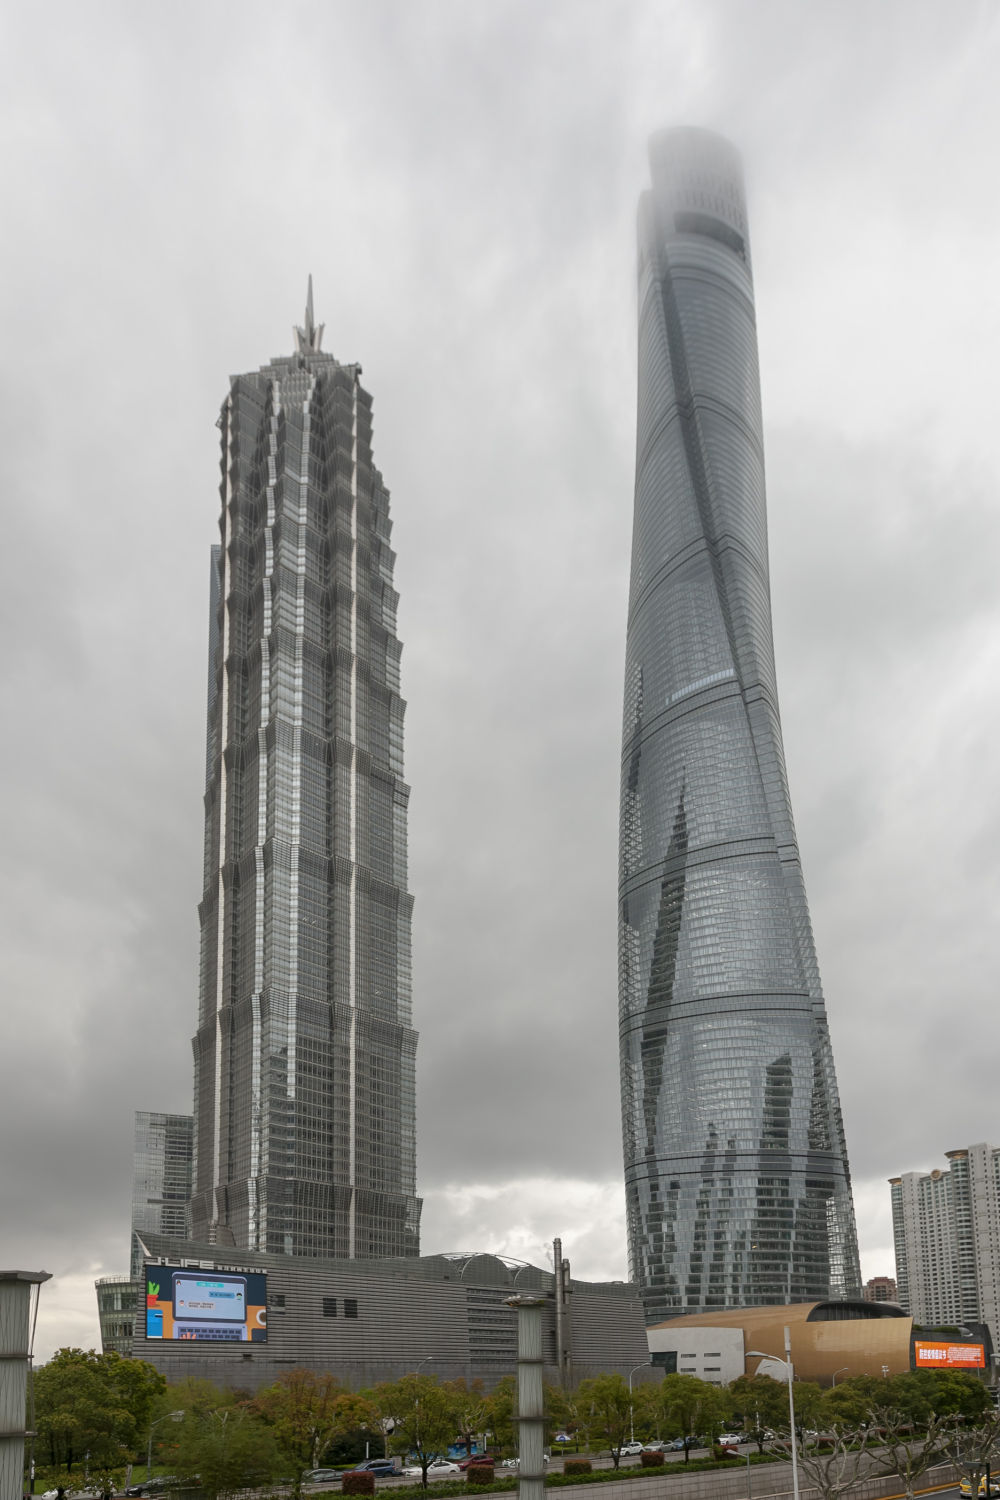 632米高上海中心大厦的"扭腰"是计算出来的,丁烈云勉励师生在新业态上